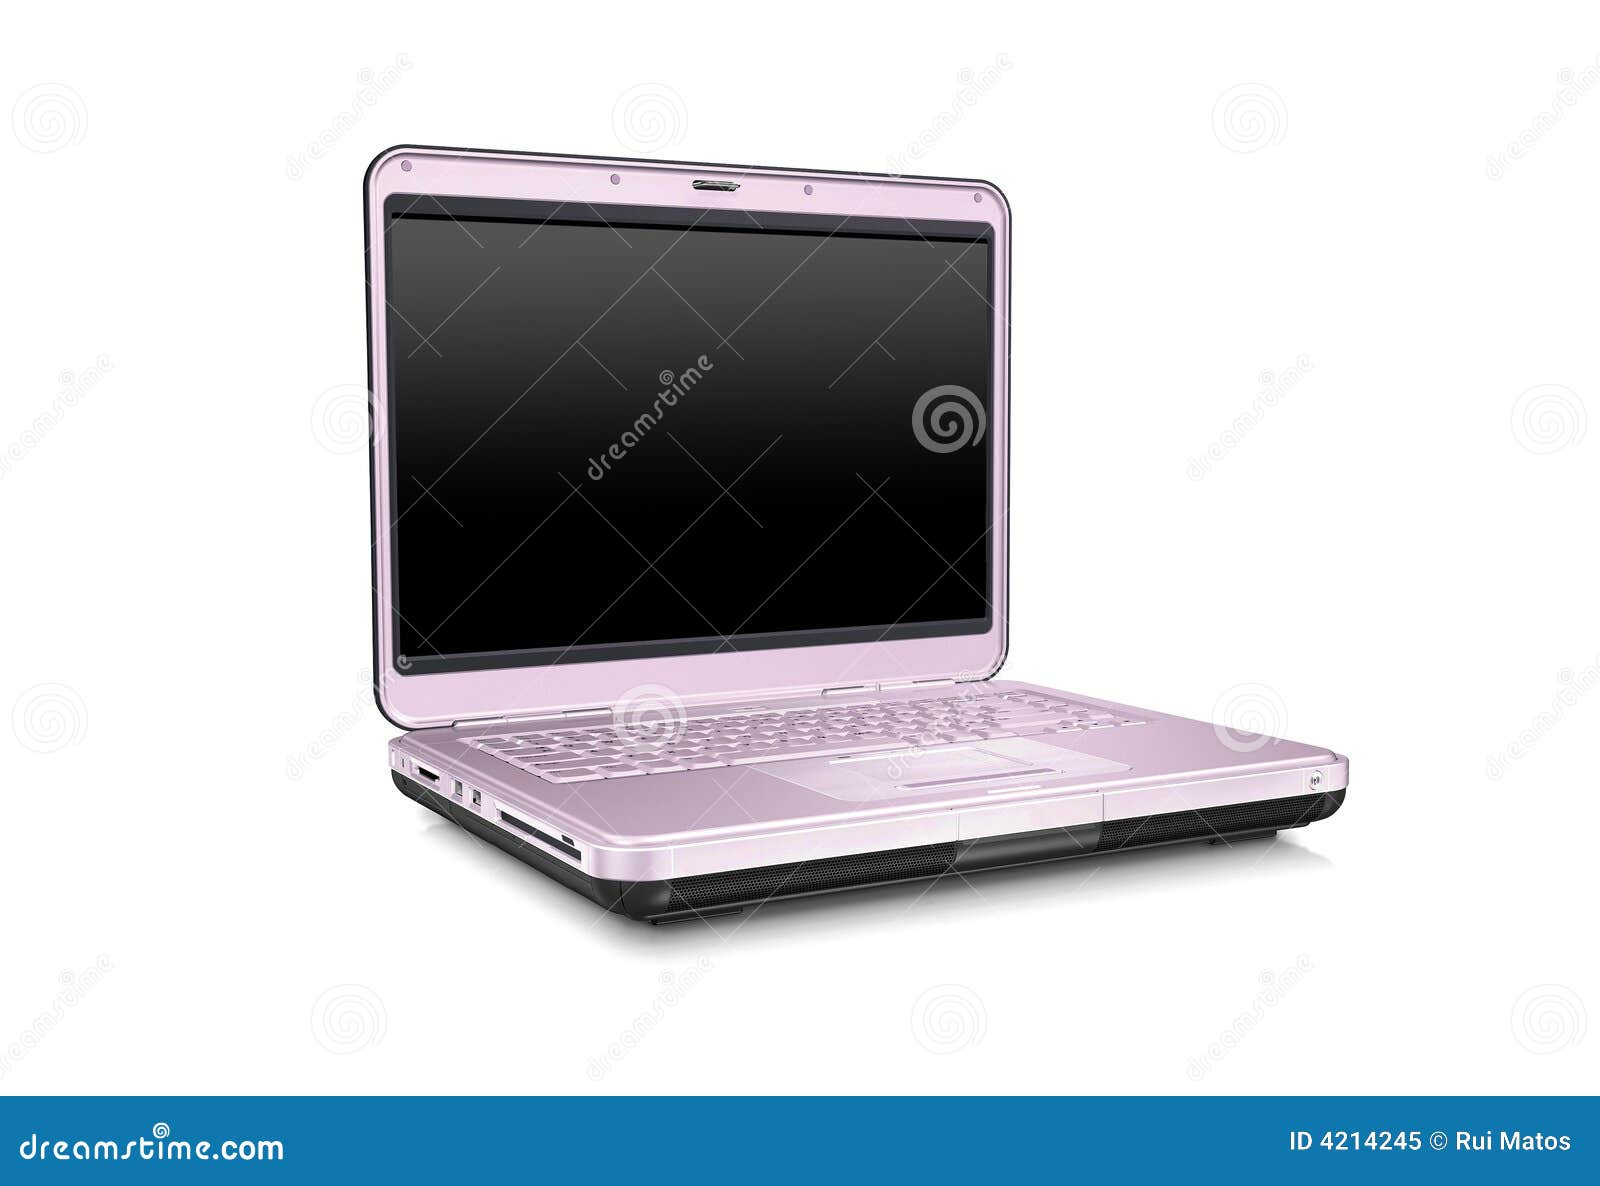 inestable texto educar Ordenador portátil rosado imagen de archivo. Imagen de teclado - 4214245